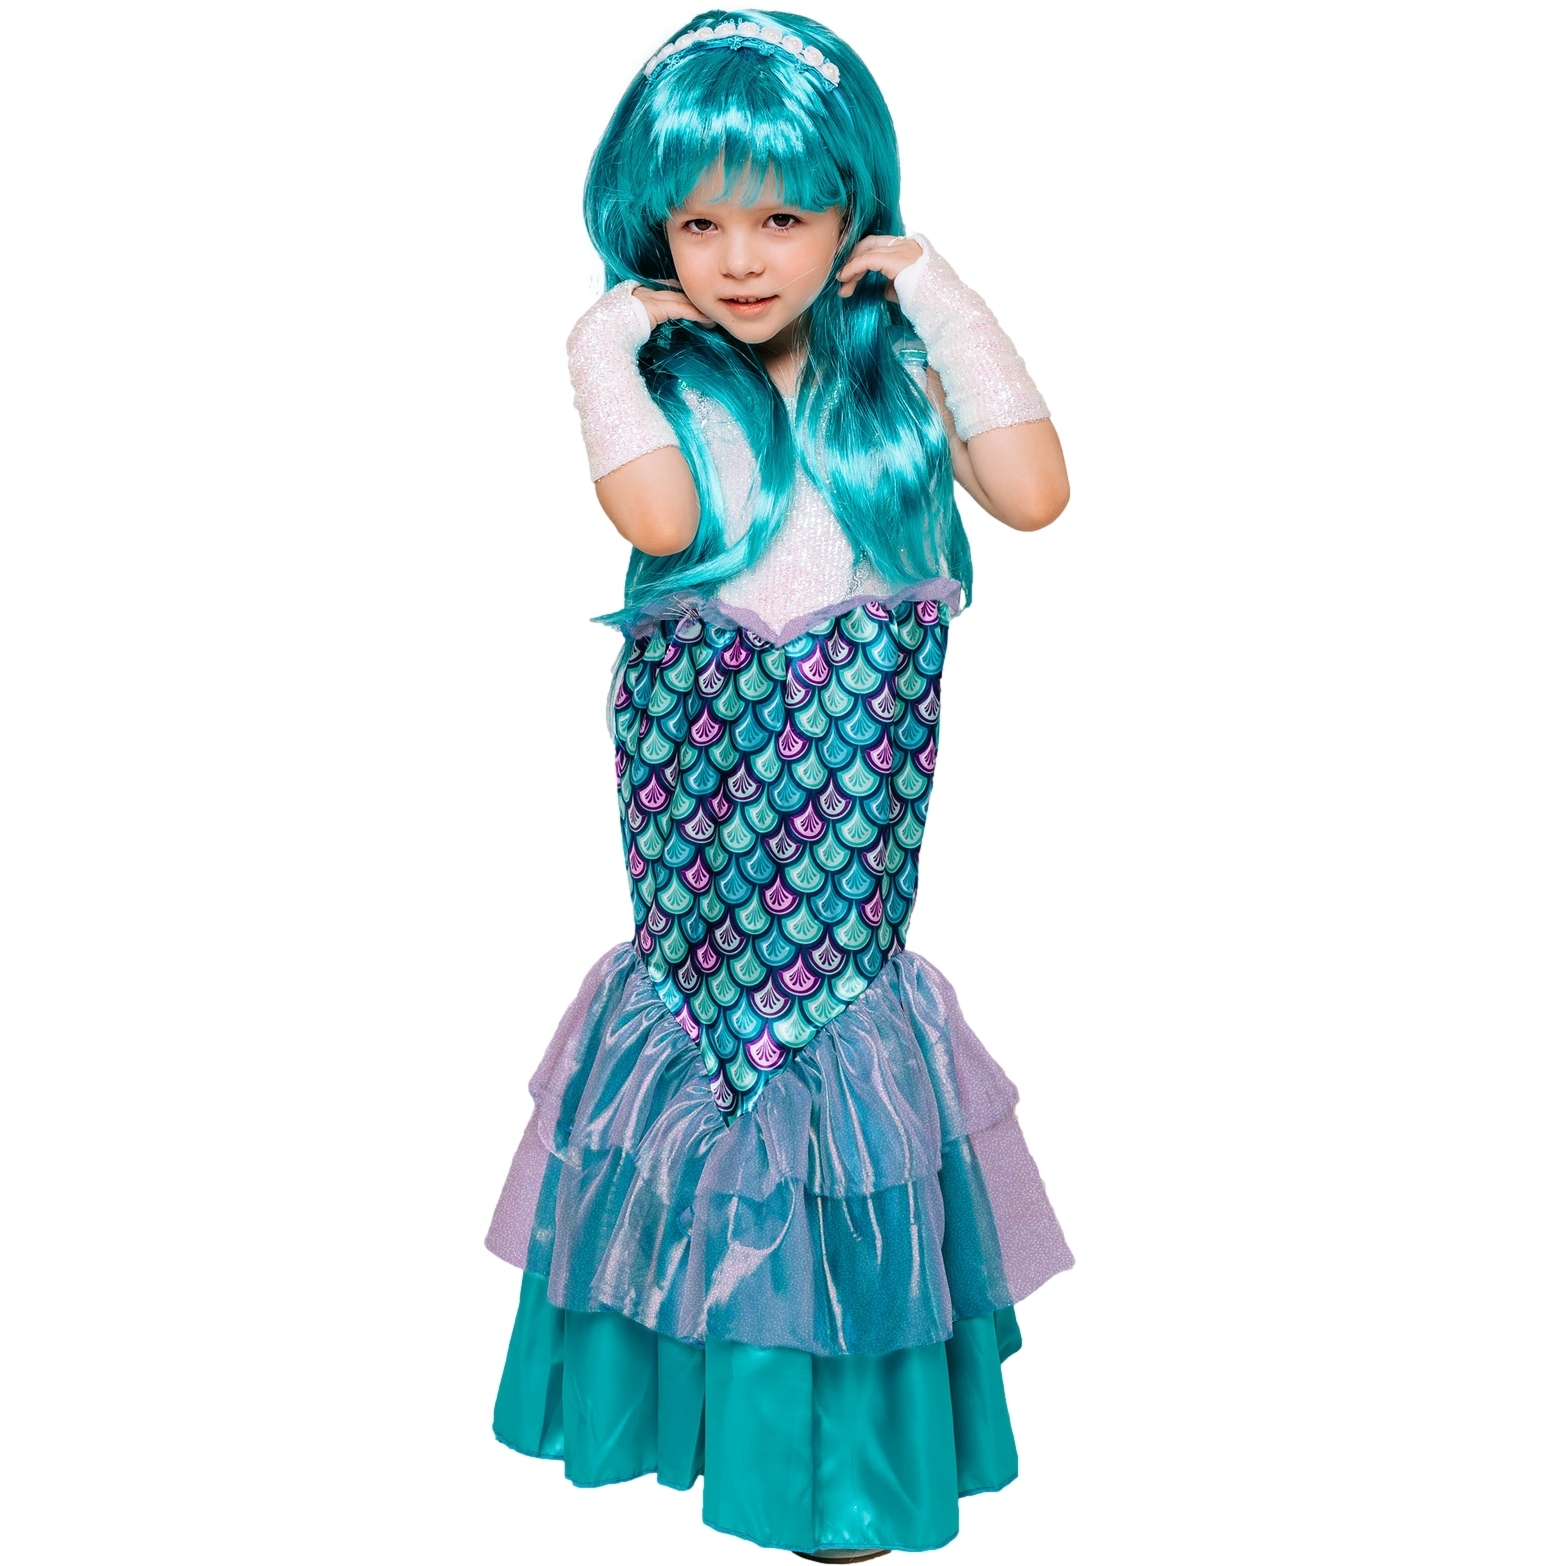 Карнавальный костюм "Русалка" (платье, ободок, перчатки, парик) размер 110-60